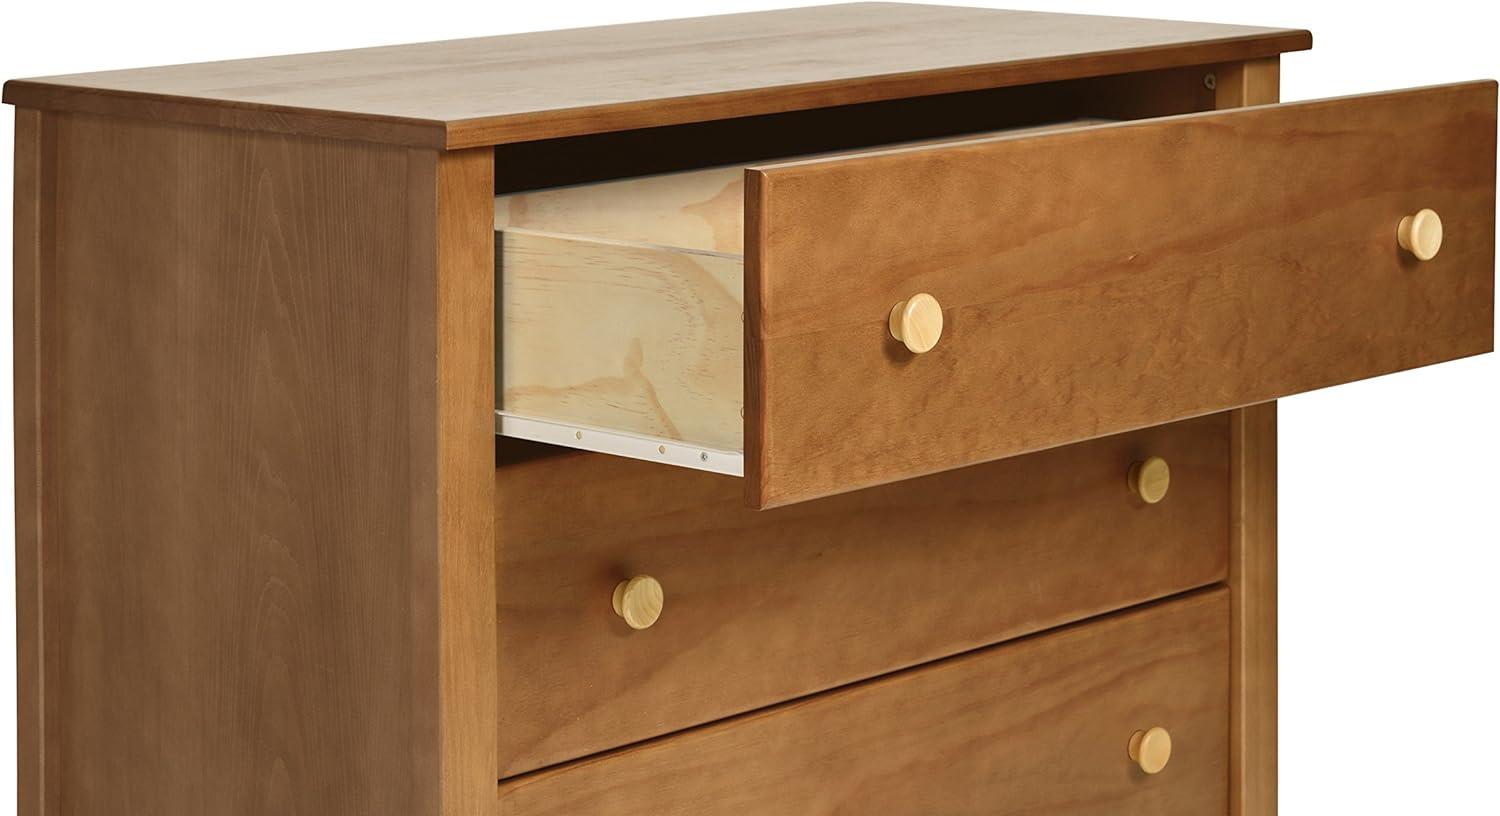 Sprout 3-Drawer Mid-Century Modern Changer Dresser in Chestnut/Natural